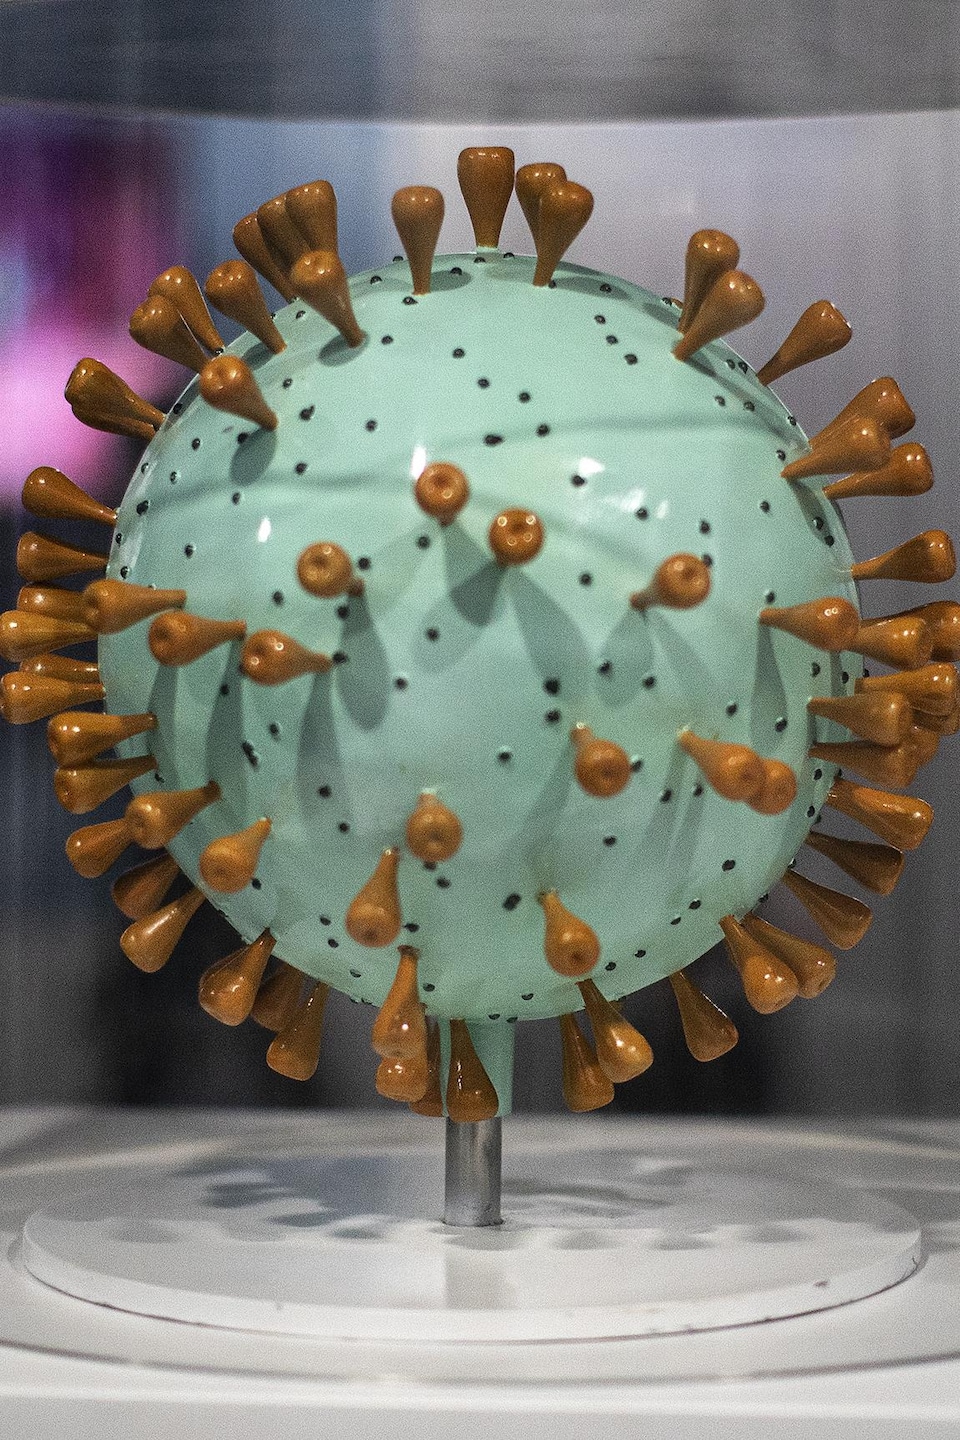 Maquette du virus de la COVID-19.